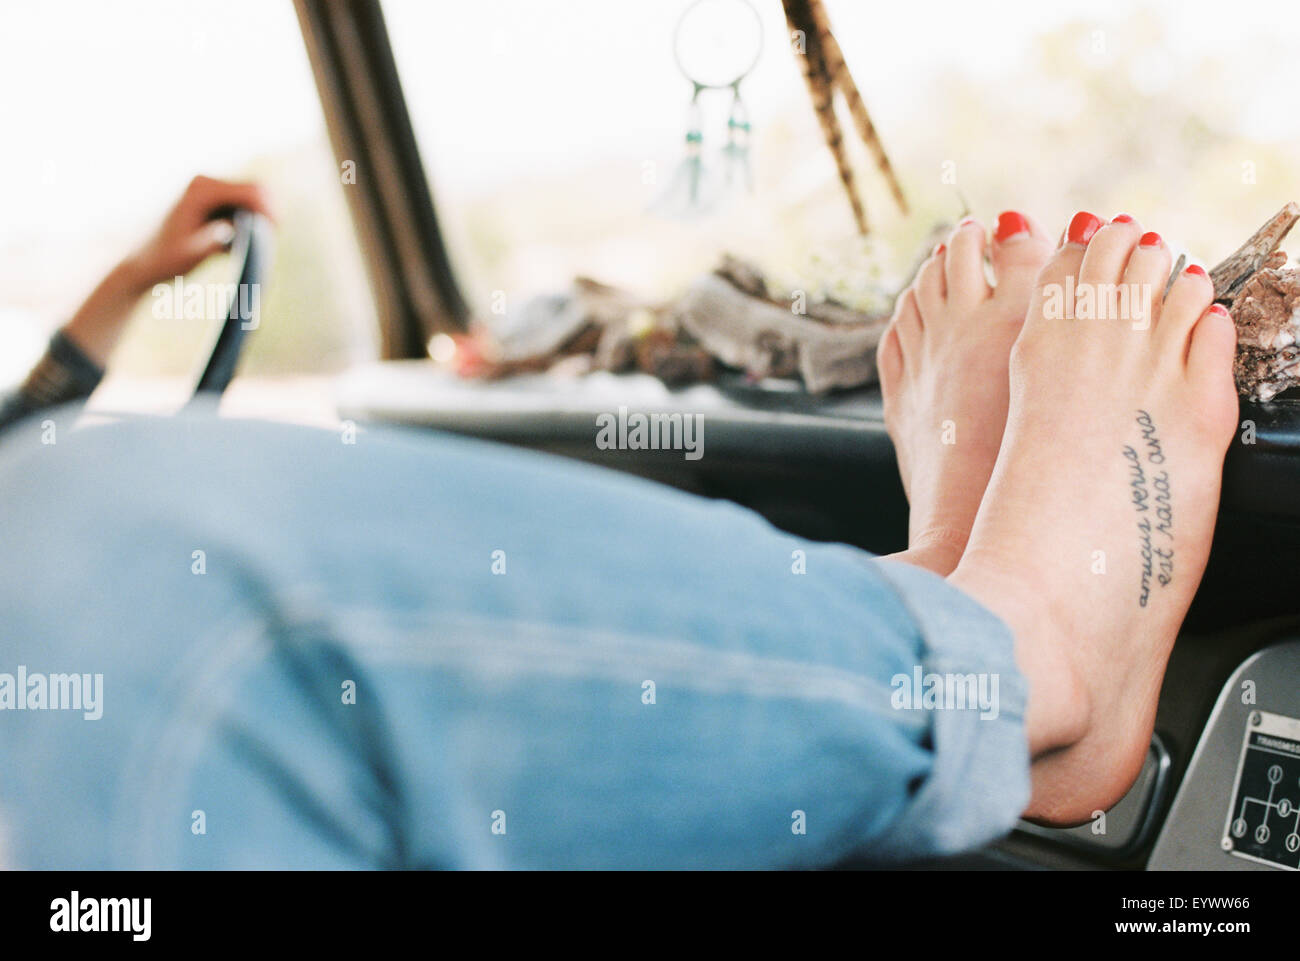 Femme aux pieds nus reposant ses pieds sur le tableau de bord d'un 4x4, un tatouage sur son pied droit. Banque D'Images